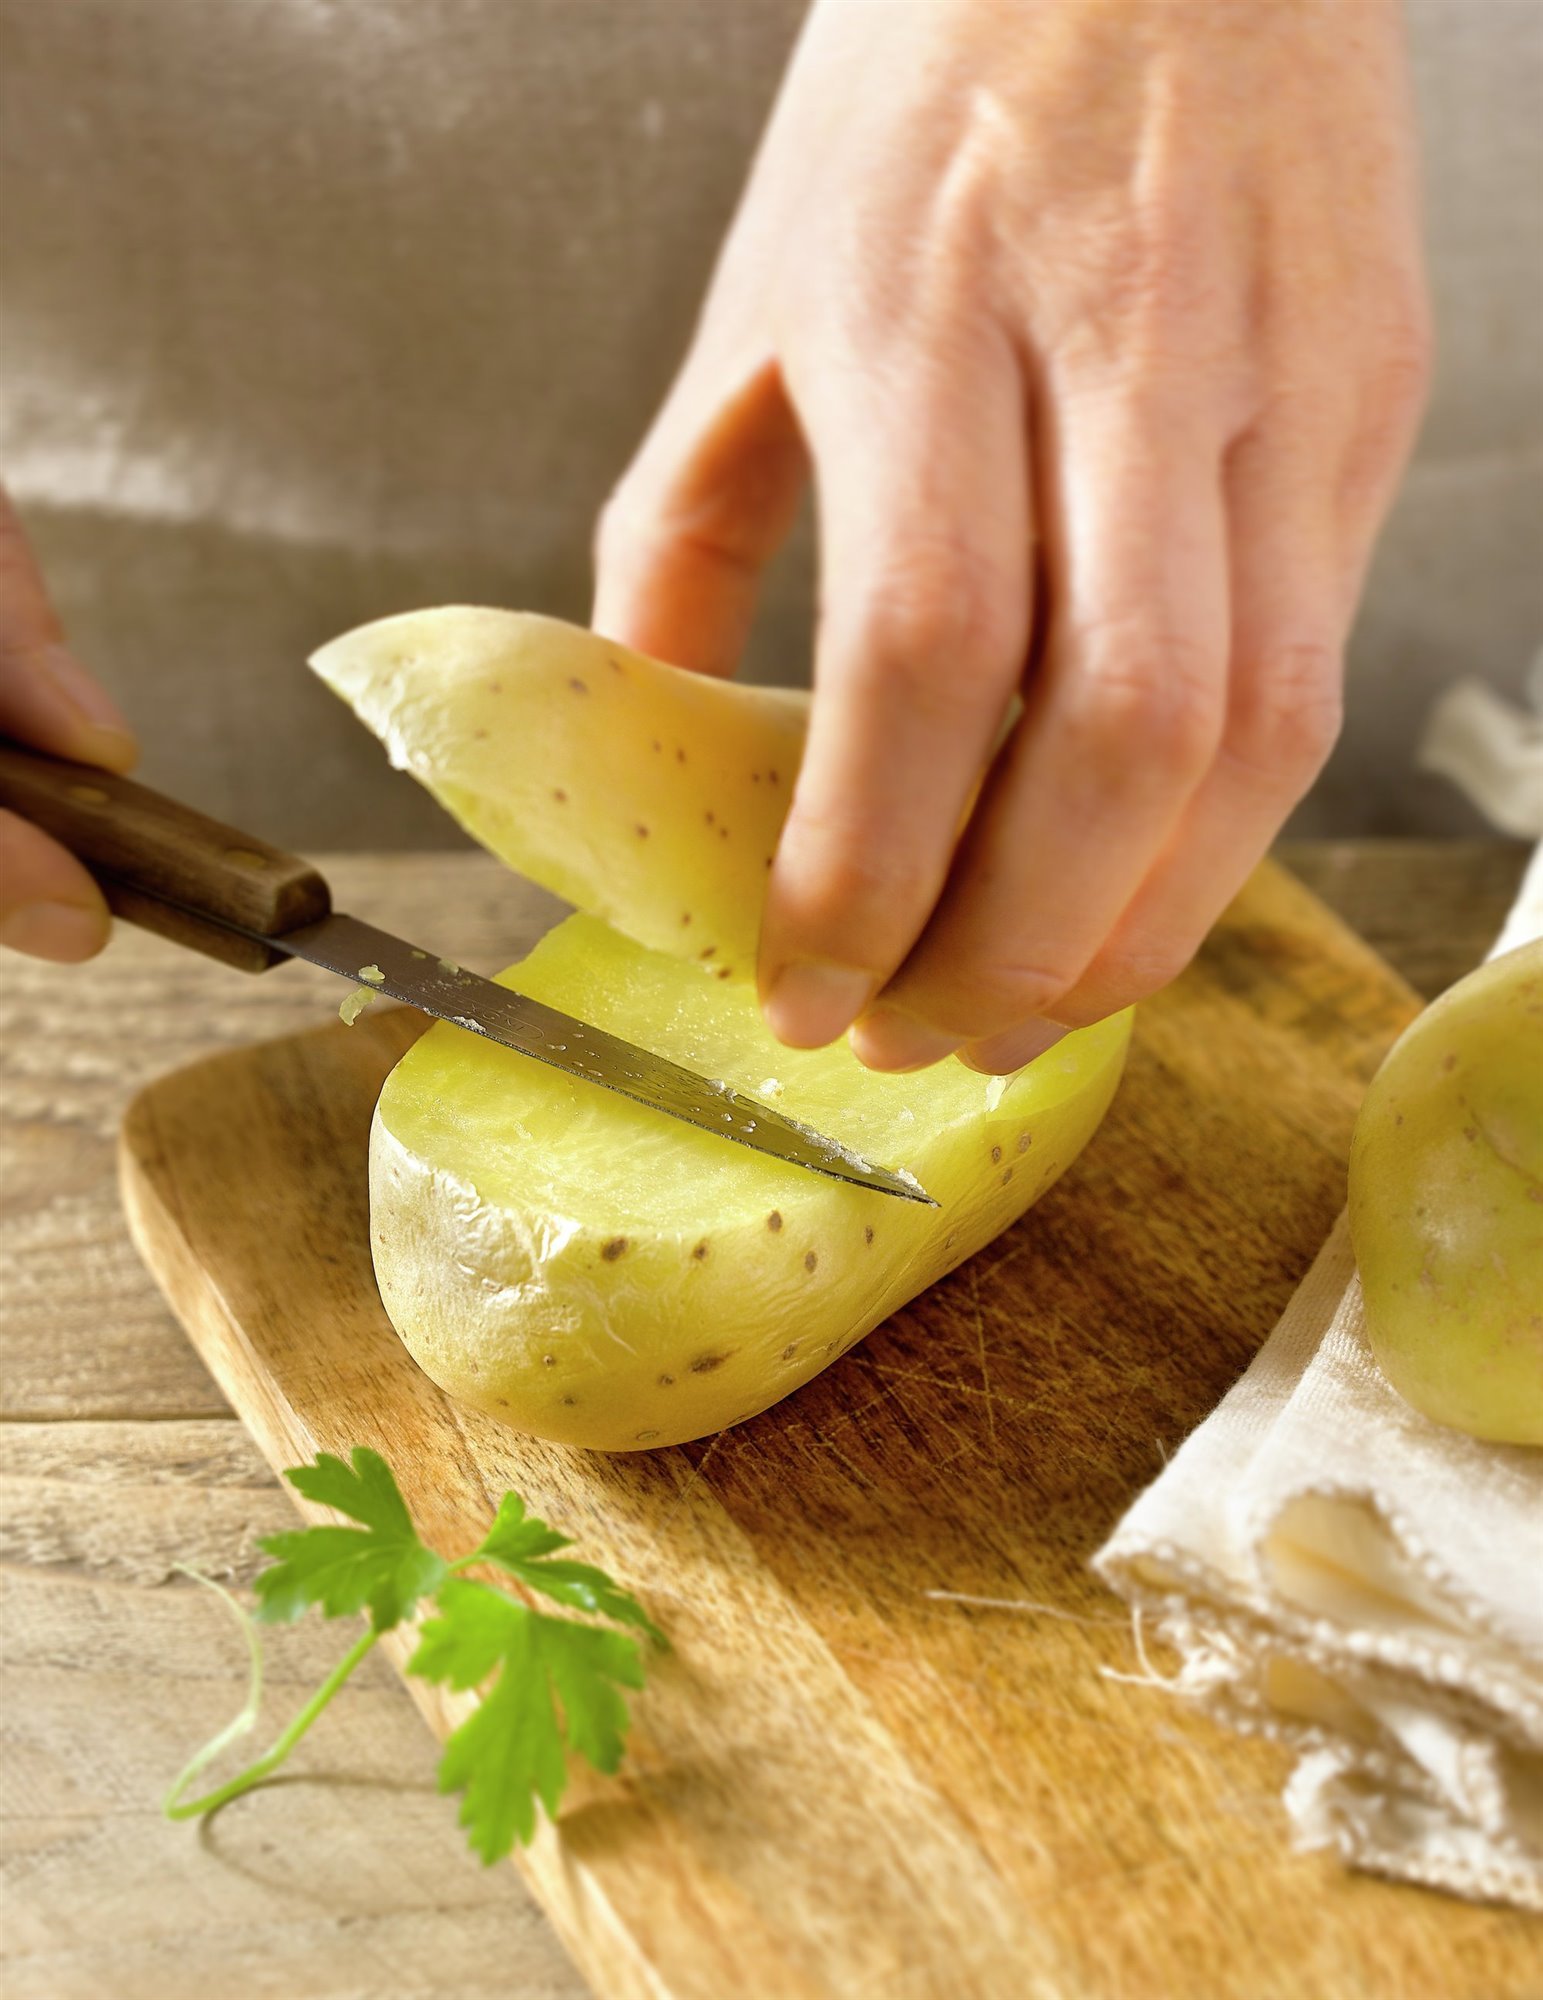 3. Corta las patatas cocidas y rellena